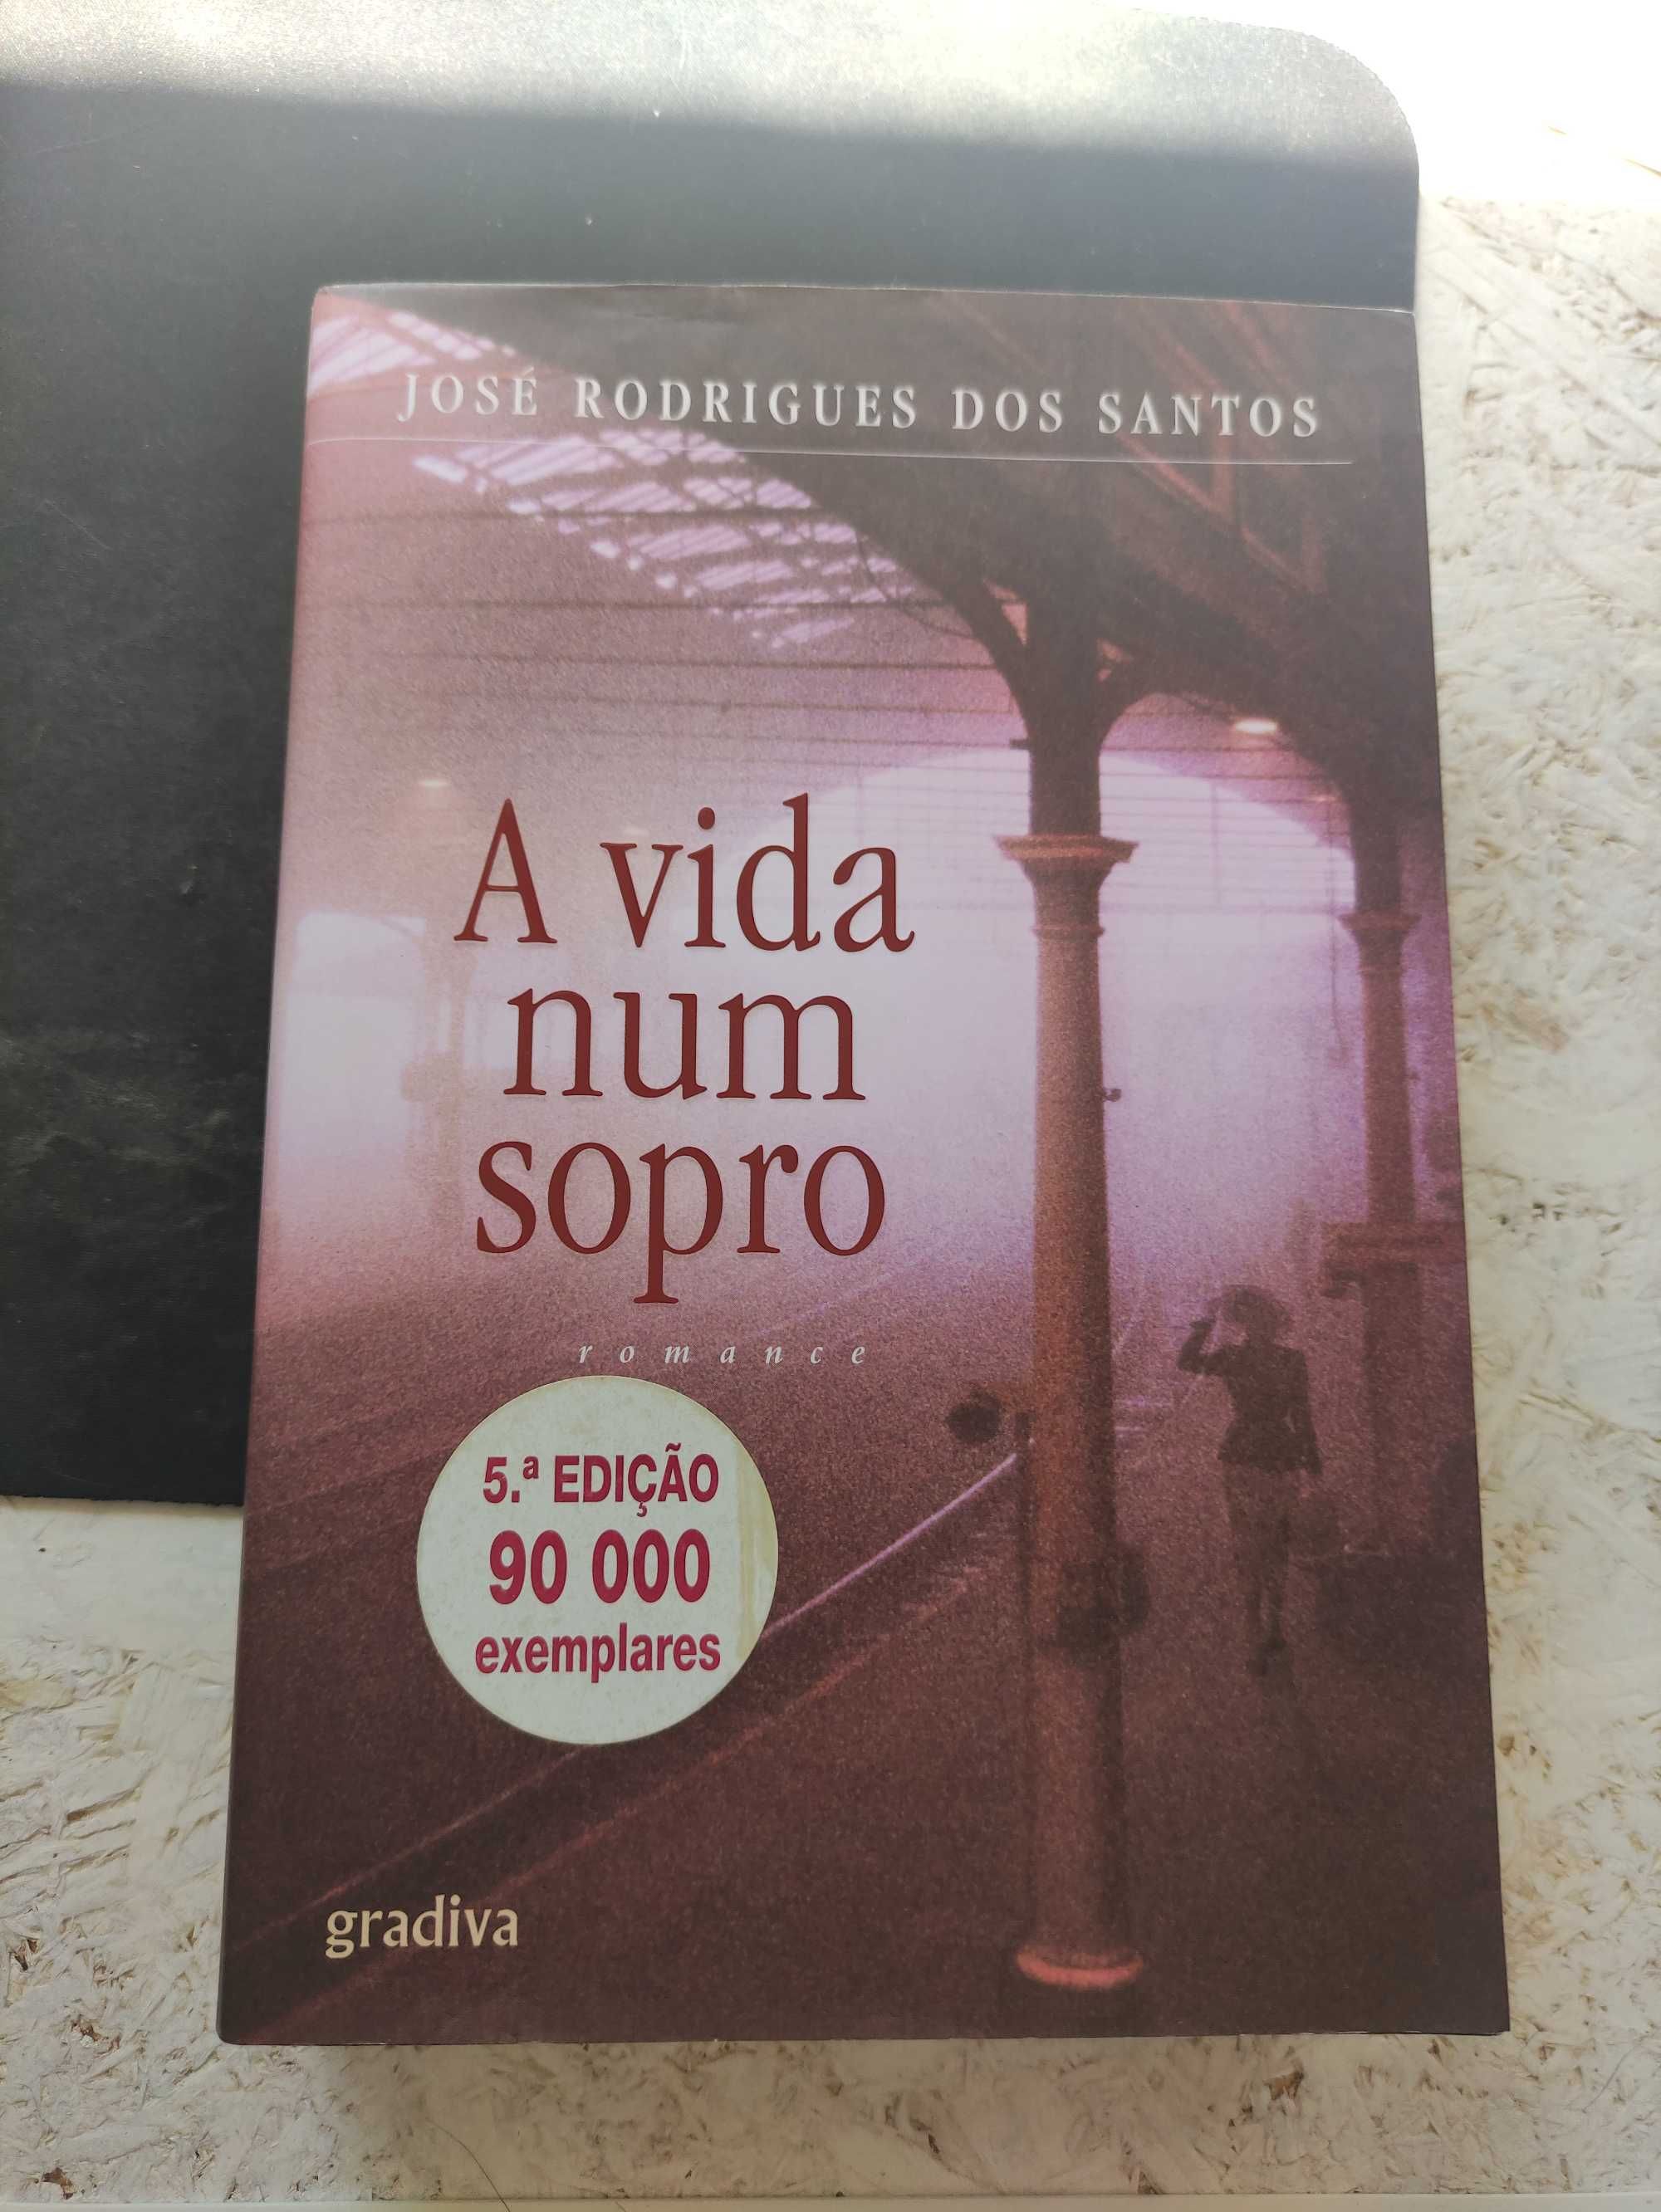 Livro "A vida num Sopro" de José Rodrigues dos Santos.